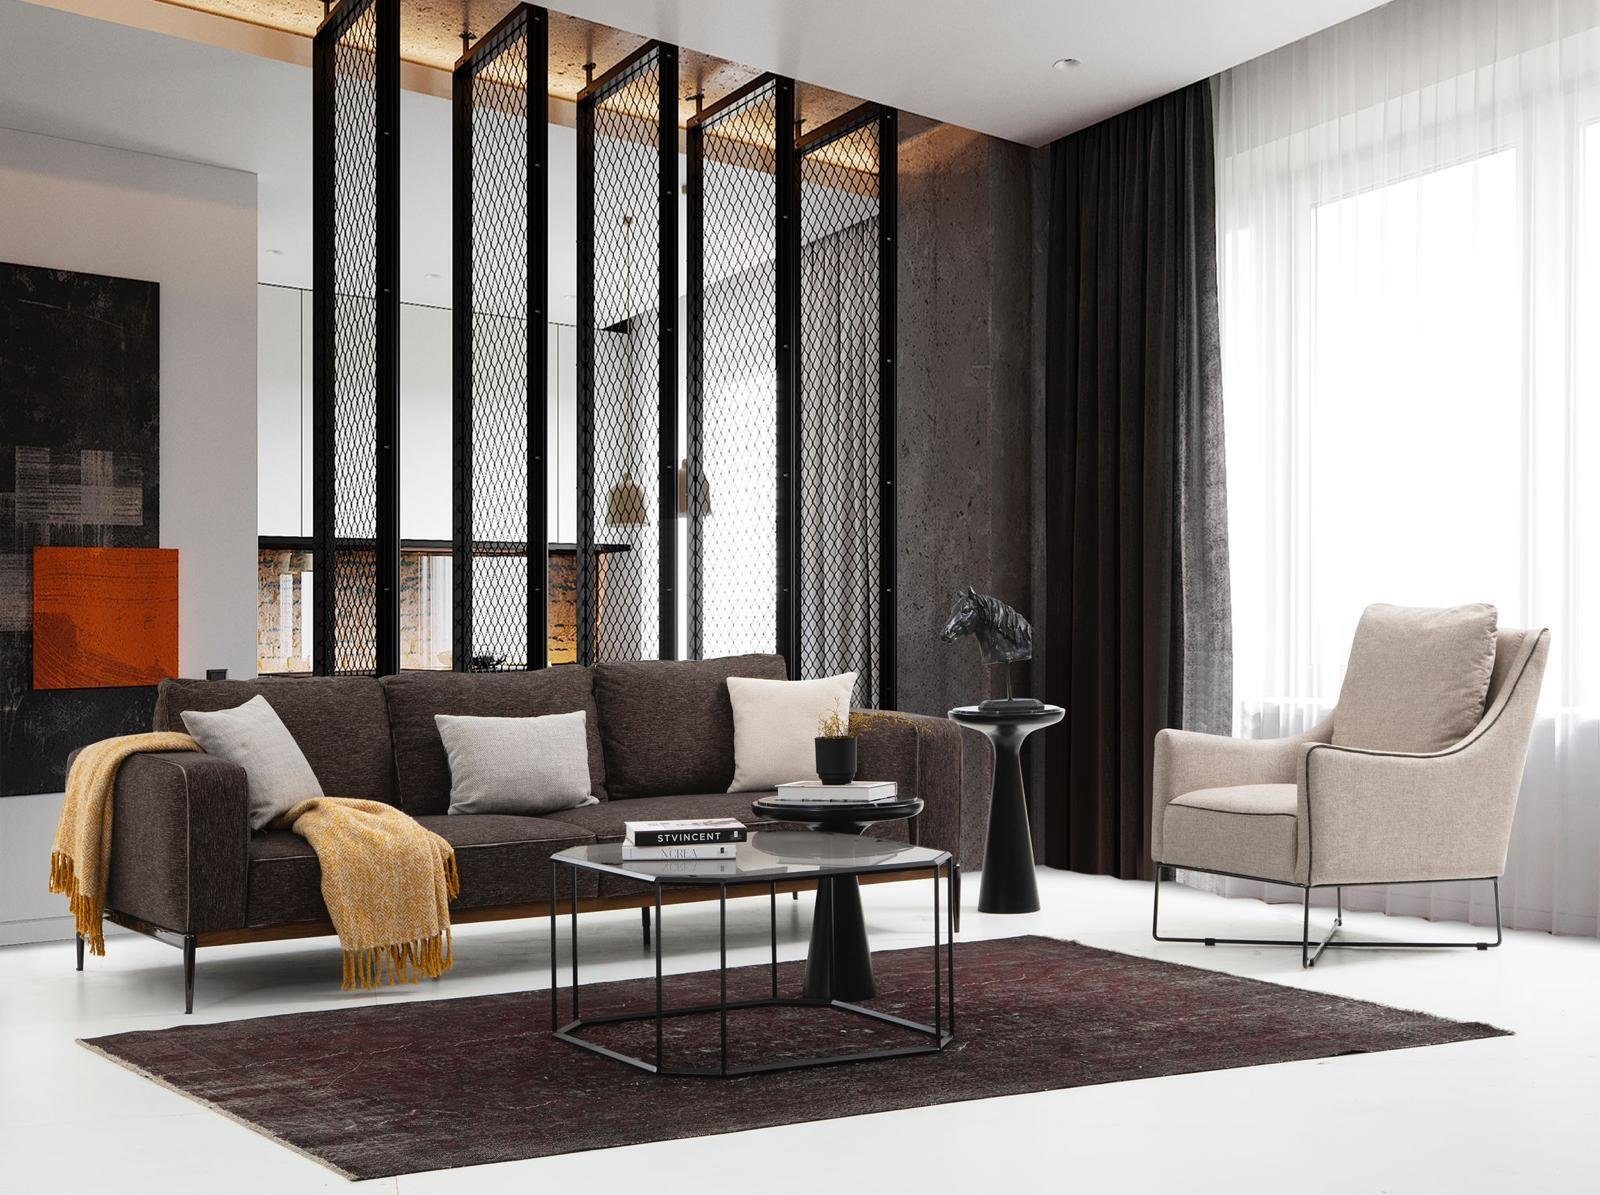 2-Sitzer in Design 1 Grau, Made Sofa Europa Wohnzimmer Teile, 2 Sitzer Zweisitzer JVmoebel Stoff Modern Sofas